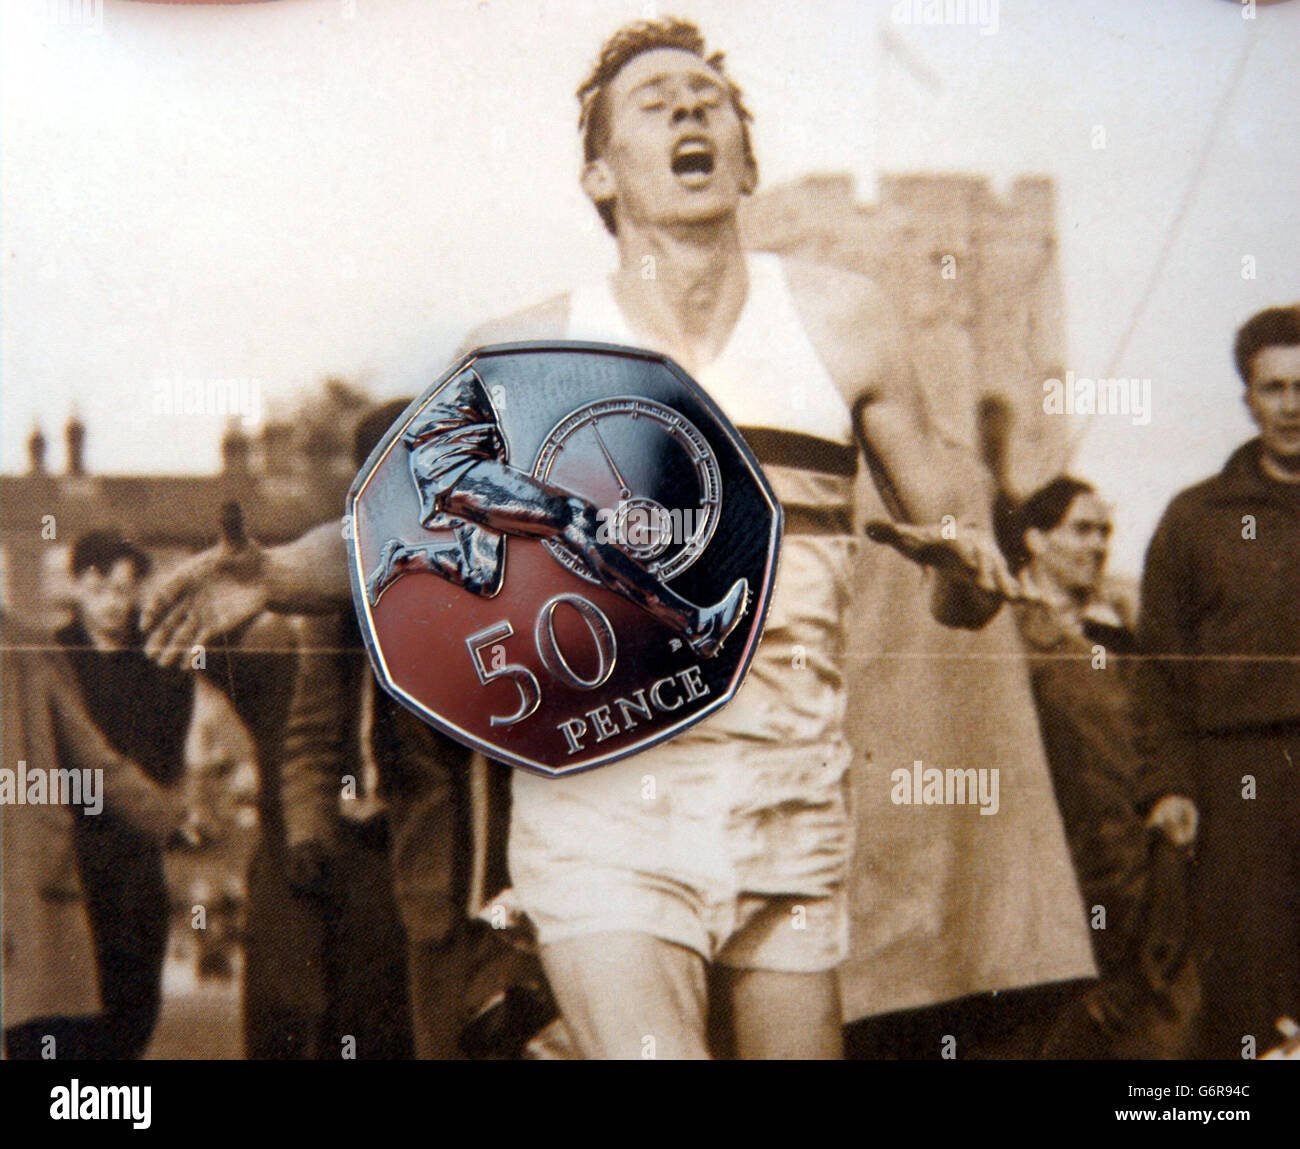 Sir Roger Bannister startet neue königliche Münze 50p Münze Stockfoto